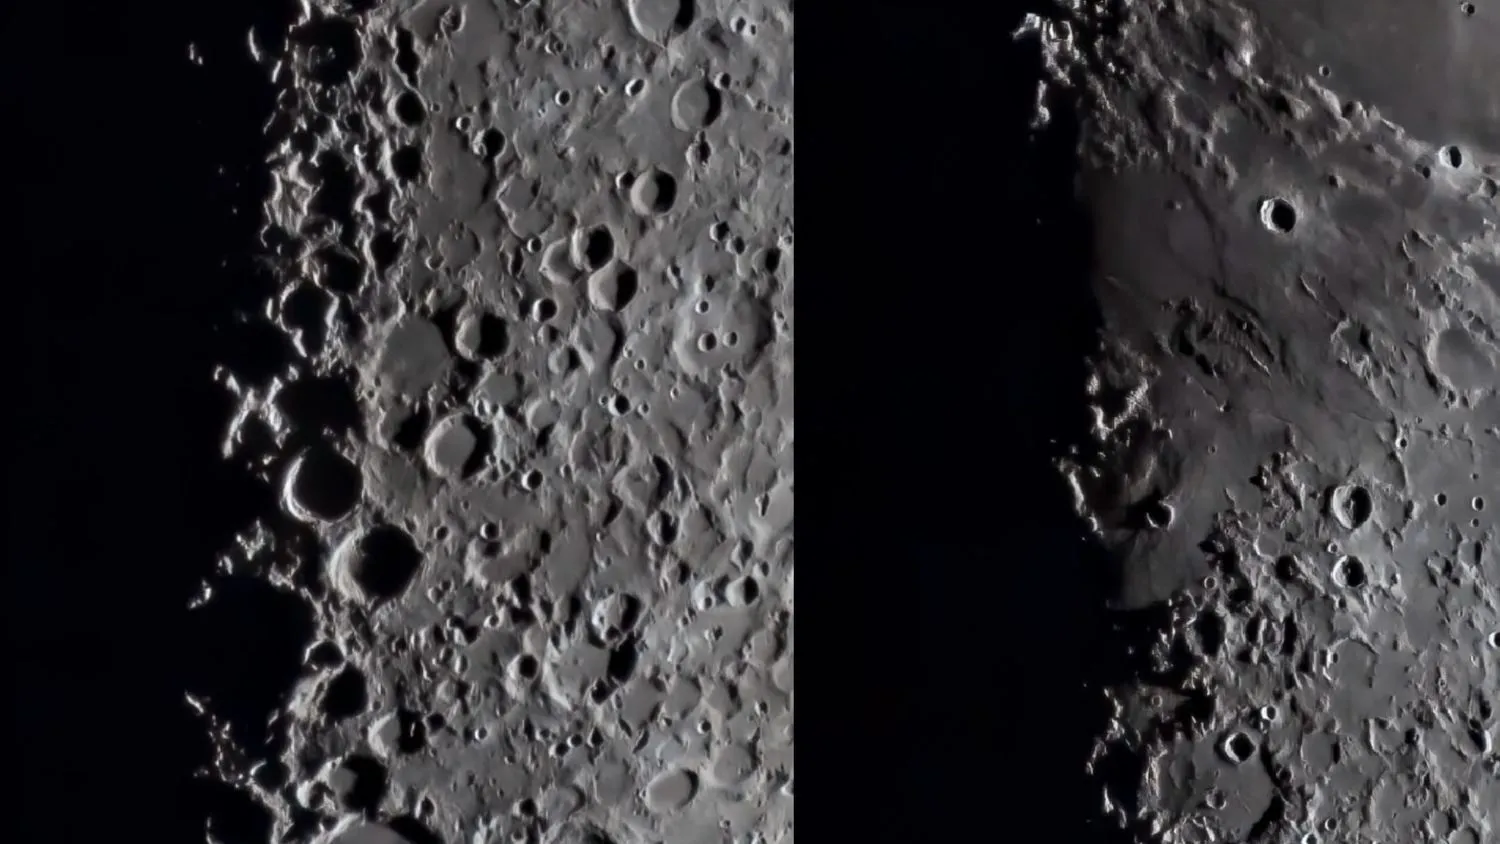 Nahaufnahmen des Mondes, die zwei Landschaftsmerkmale zeigen, die den Buchstaben X und V ähneln